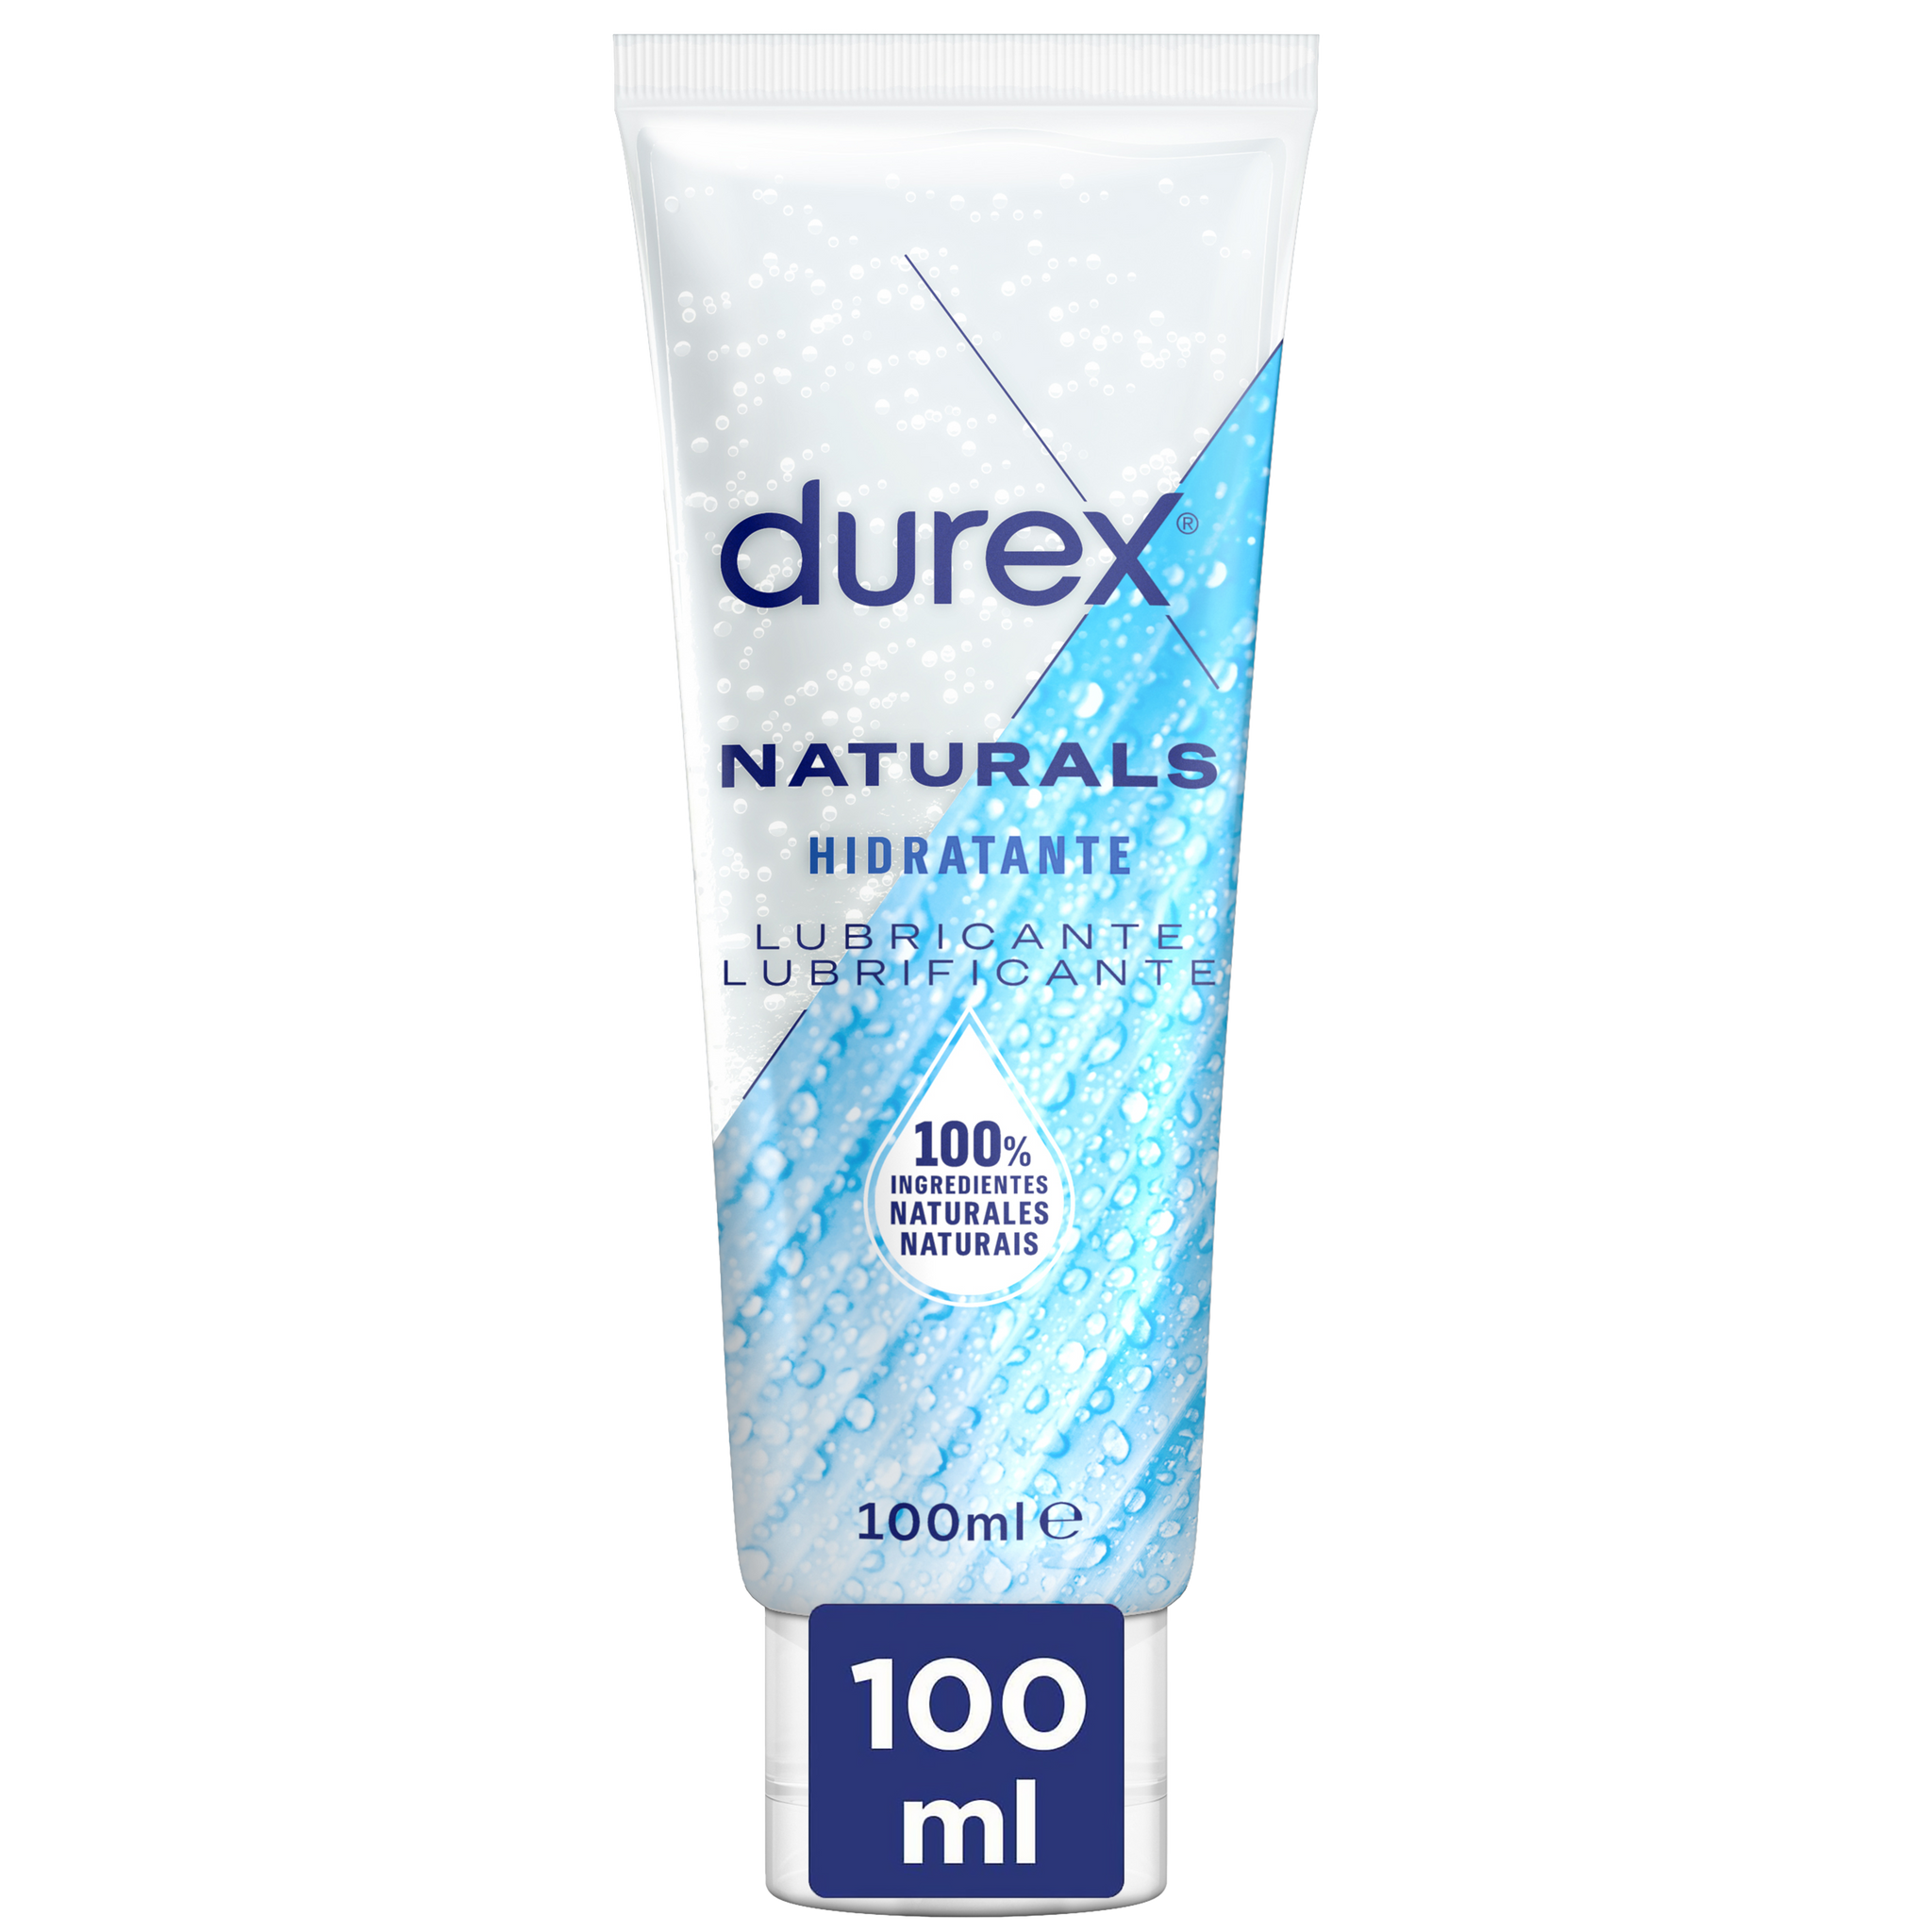 Durex Lubrificante Naturals Hidratante 100 ml